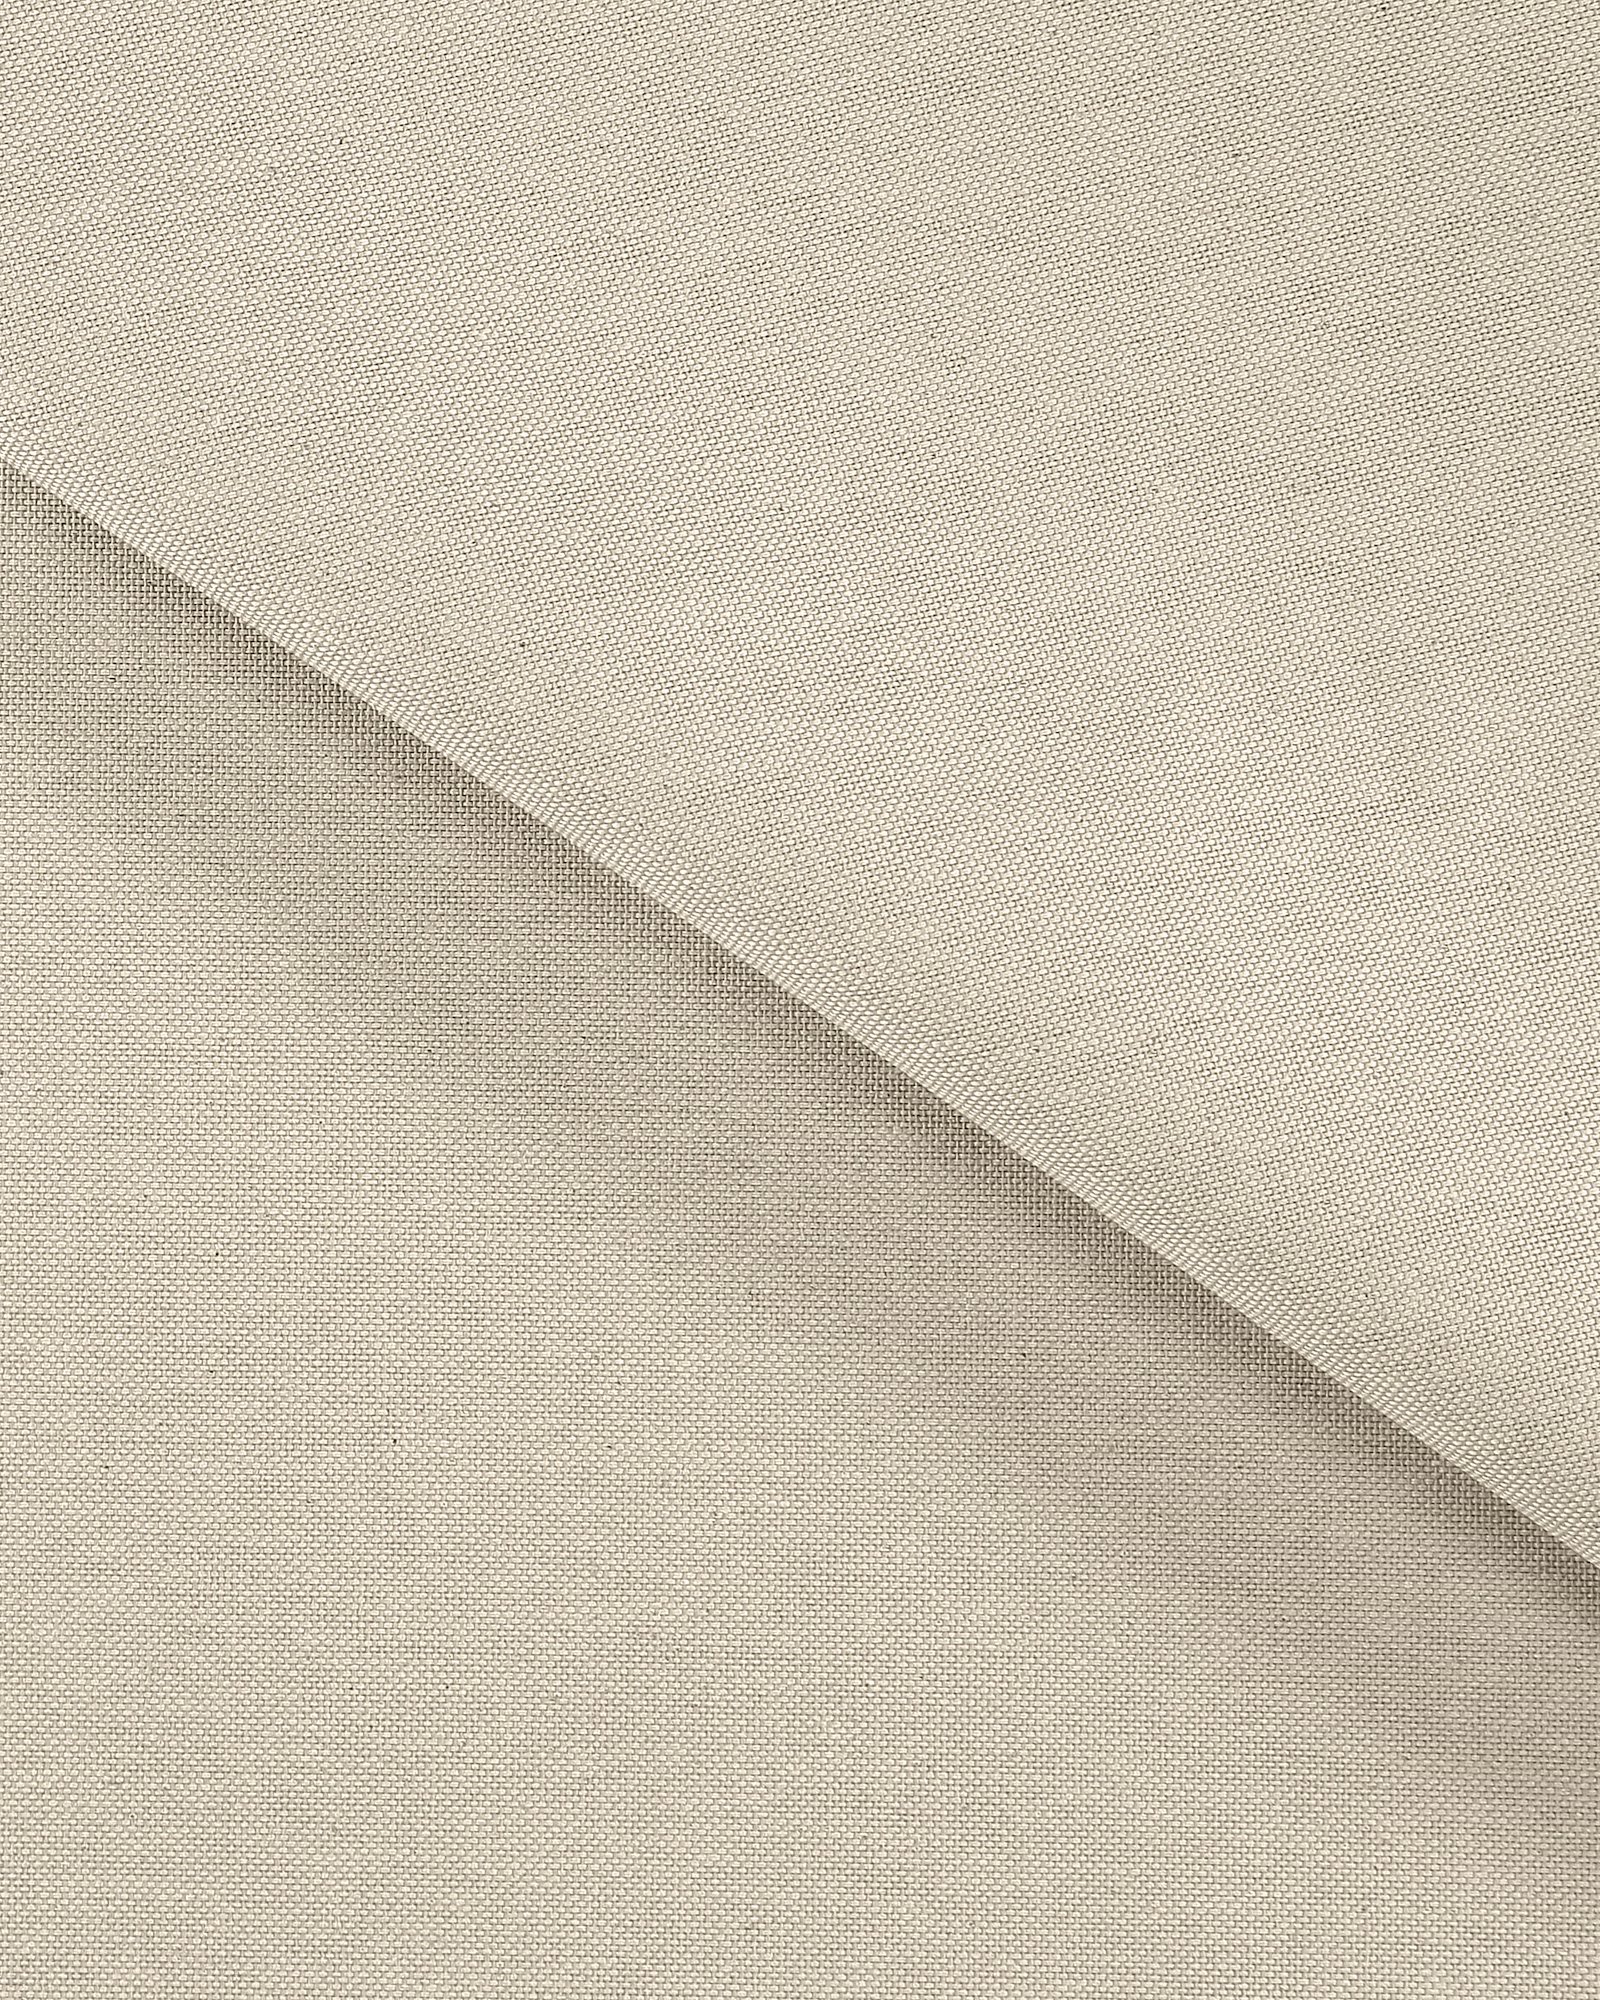 Tekstilvoksdug hørlook/lys grå 160 cm 872301_pack